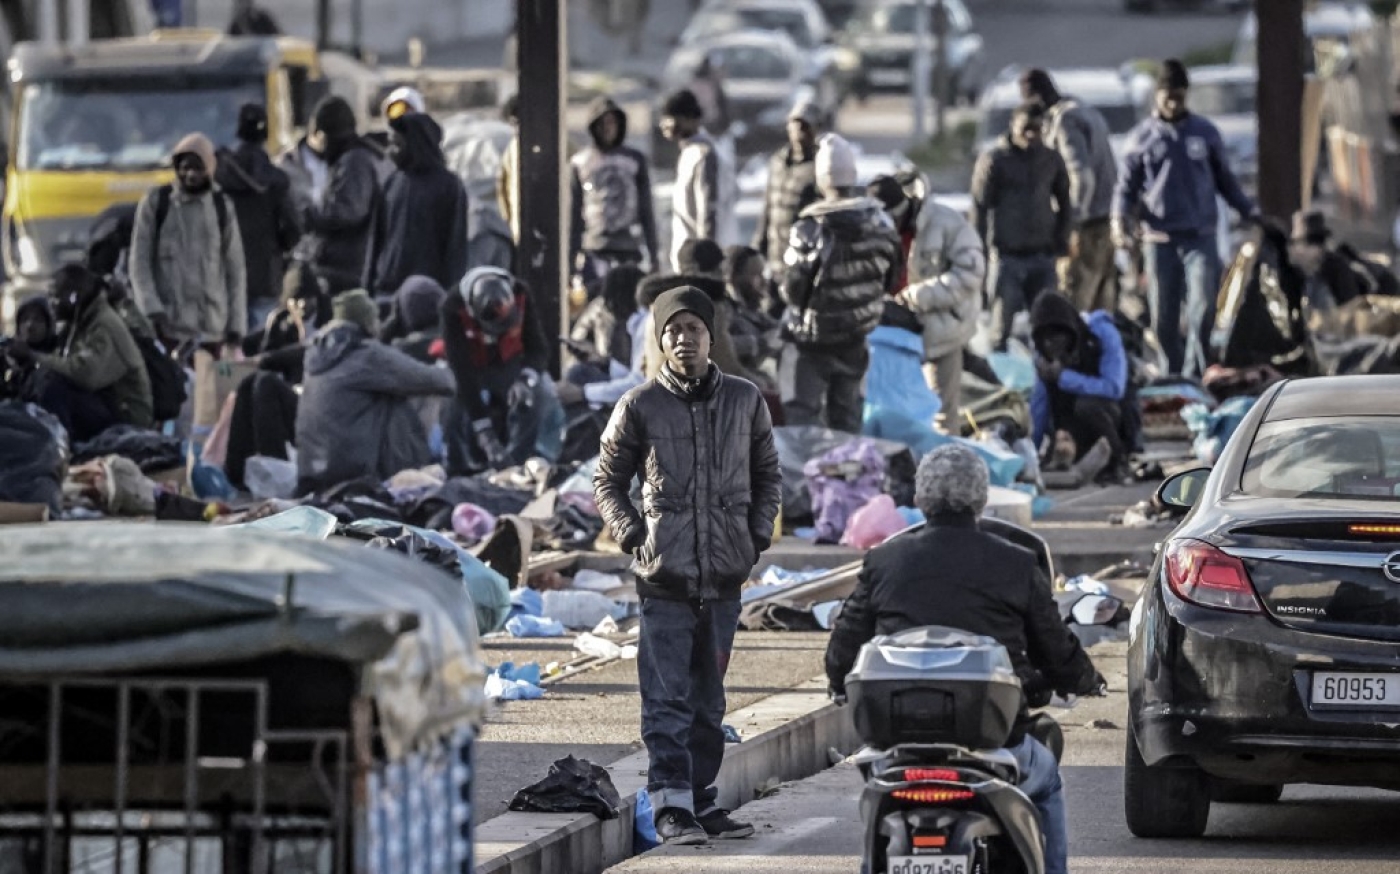 Devenu un refuge pour les migrants en raison de sa proximité avec la gare, Oulad Ziane, en périphérie de Casablanca, est le théâtre de tensions récurrentes avec les autorités (AFP/Fadel Senna)